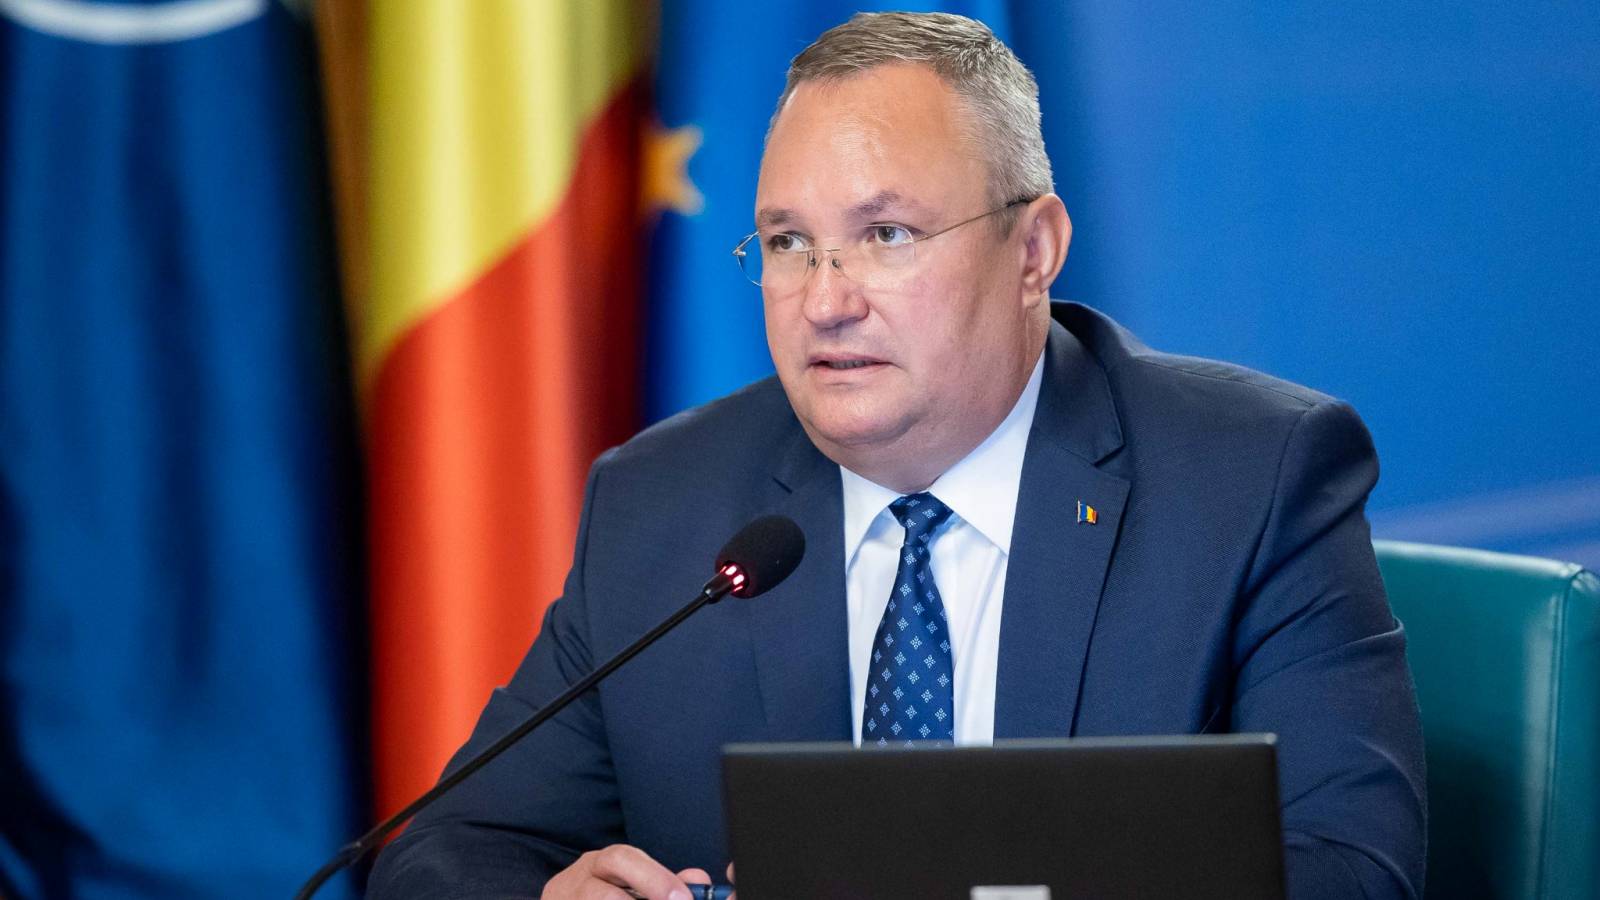 Nicolae Ciuca ha discusso dell'espansione del partenariato strategico con il Primo Ministro della Moldavia